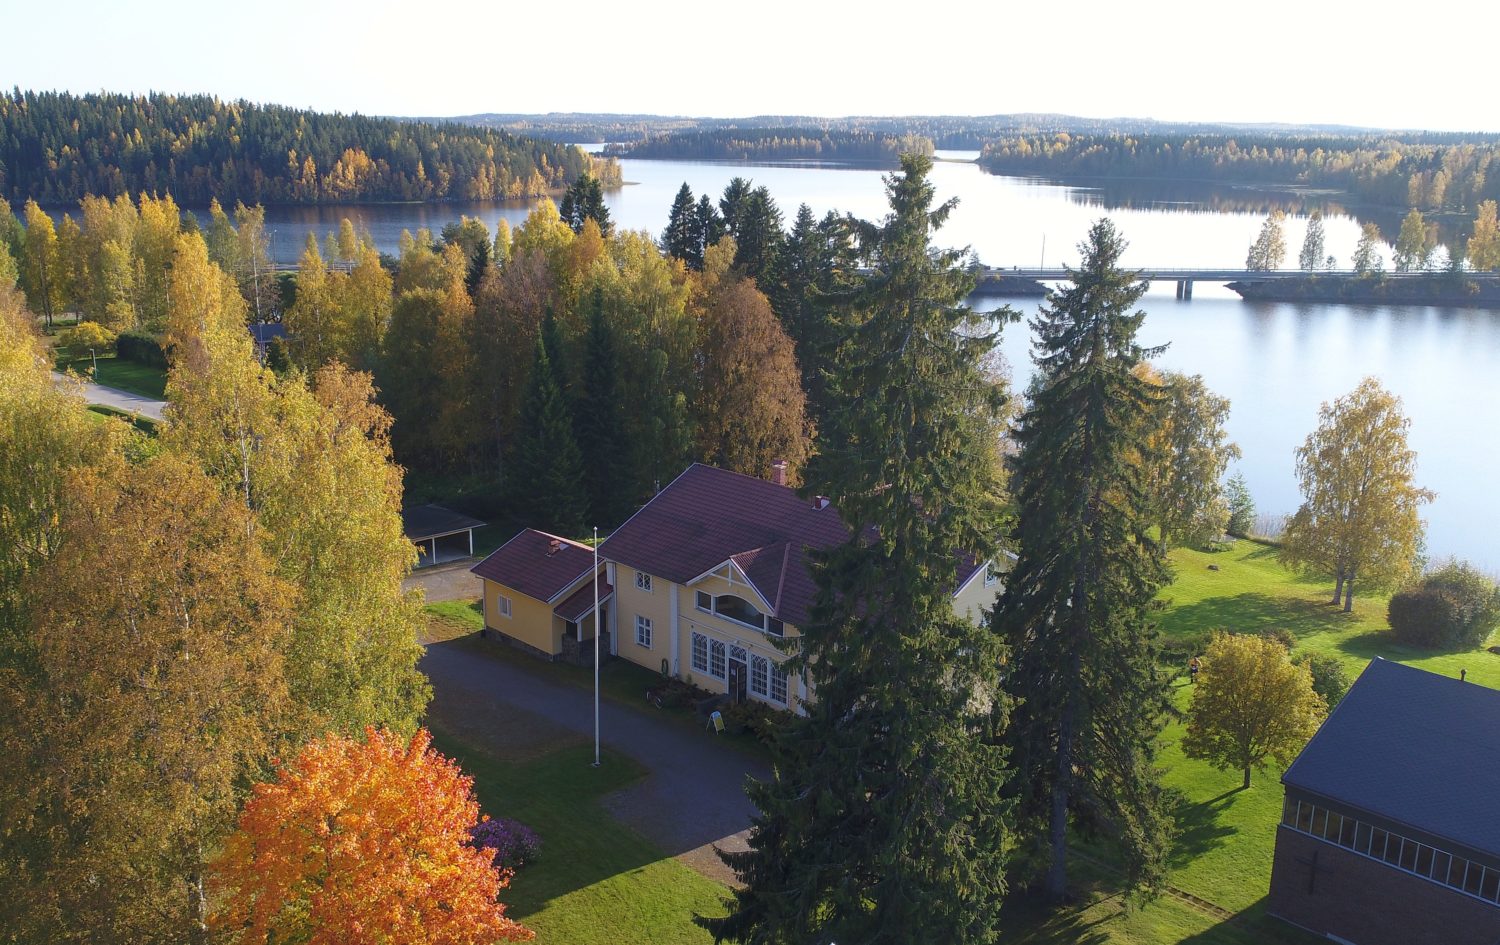 Hotelli Vanha Pappila Hetki sijaitsee Ähtärissä tunnin päässä Jyväskylästä ja Seinäjoelta